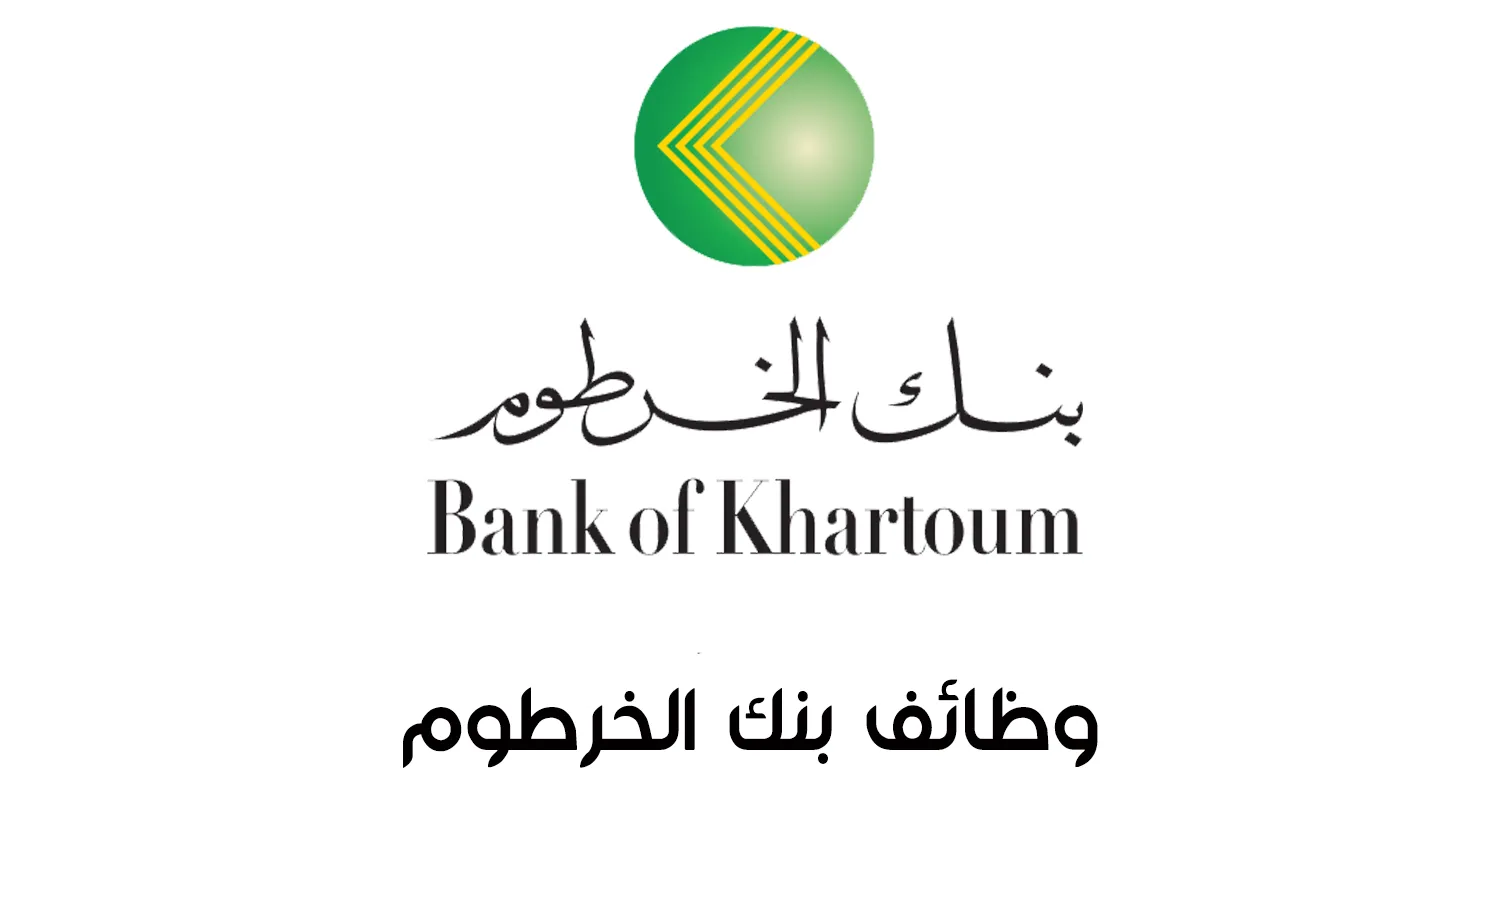 موظف  خدمات عملاء Customer Service Officer | بنك الخرطوم  فرع عطبرة Bank of Khartoum